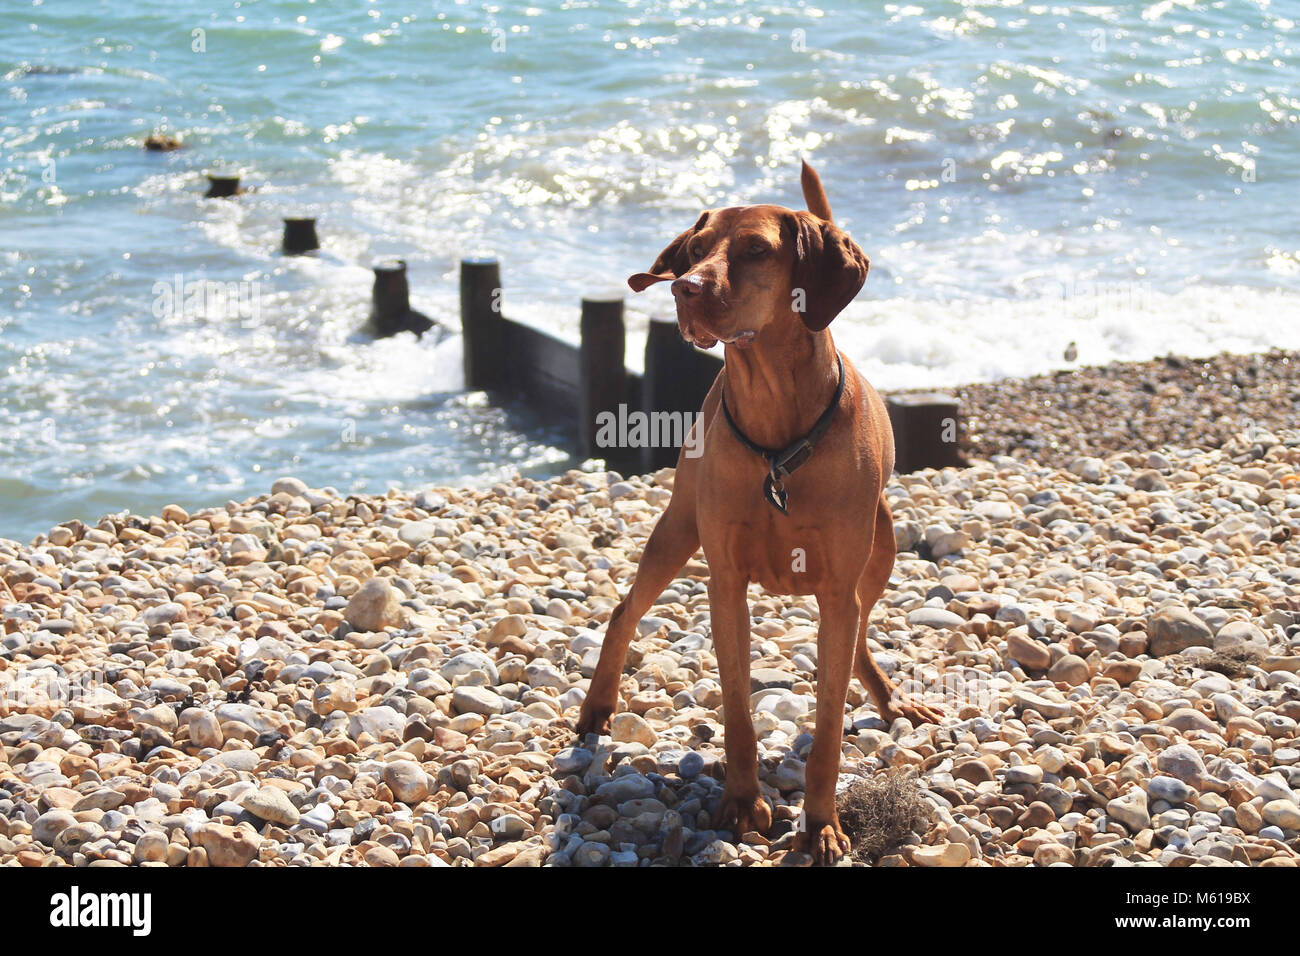 Dog on a pebbly beach Stock Photo